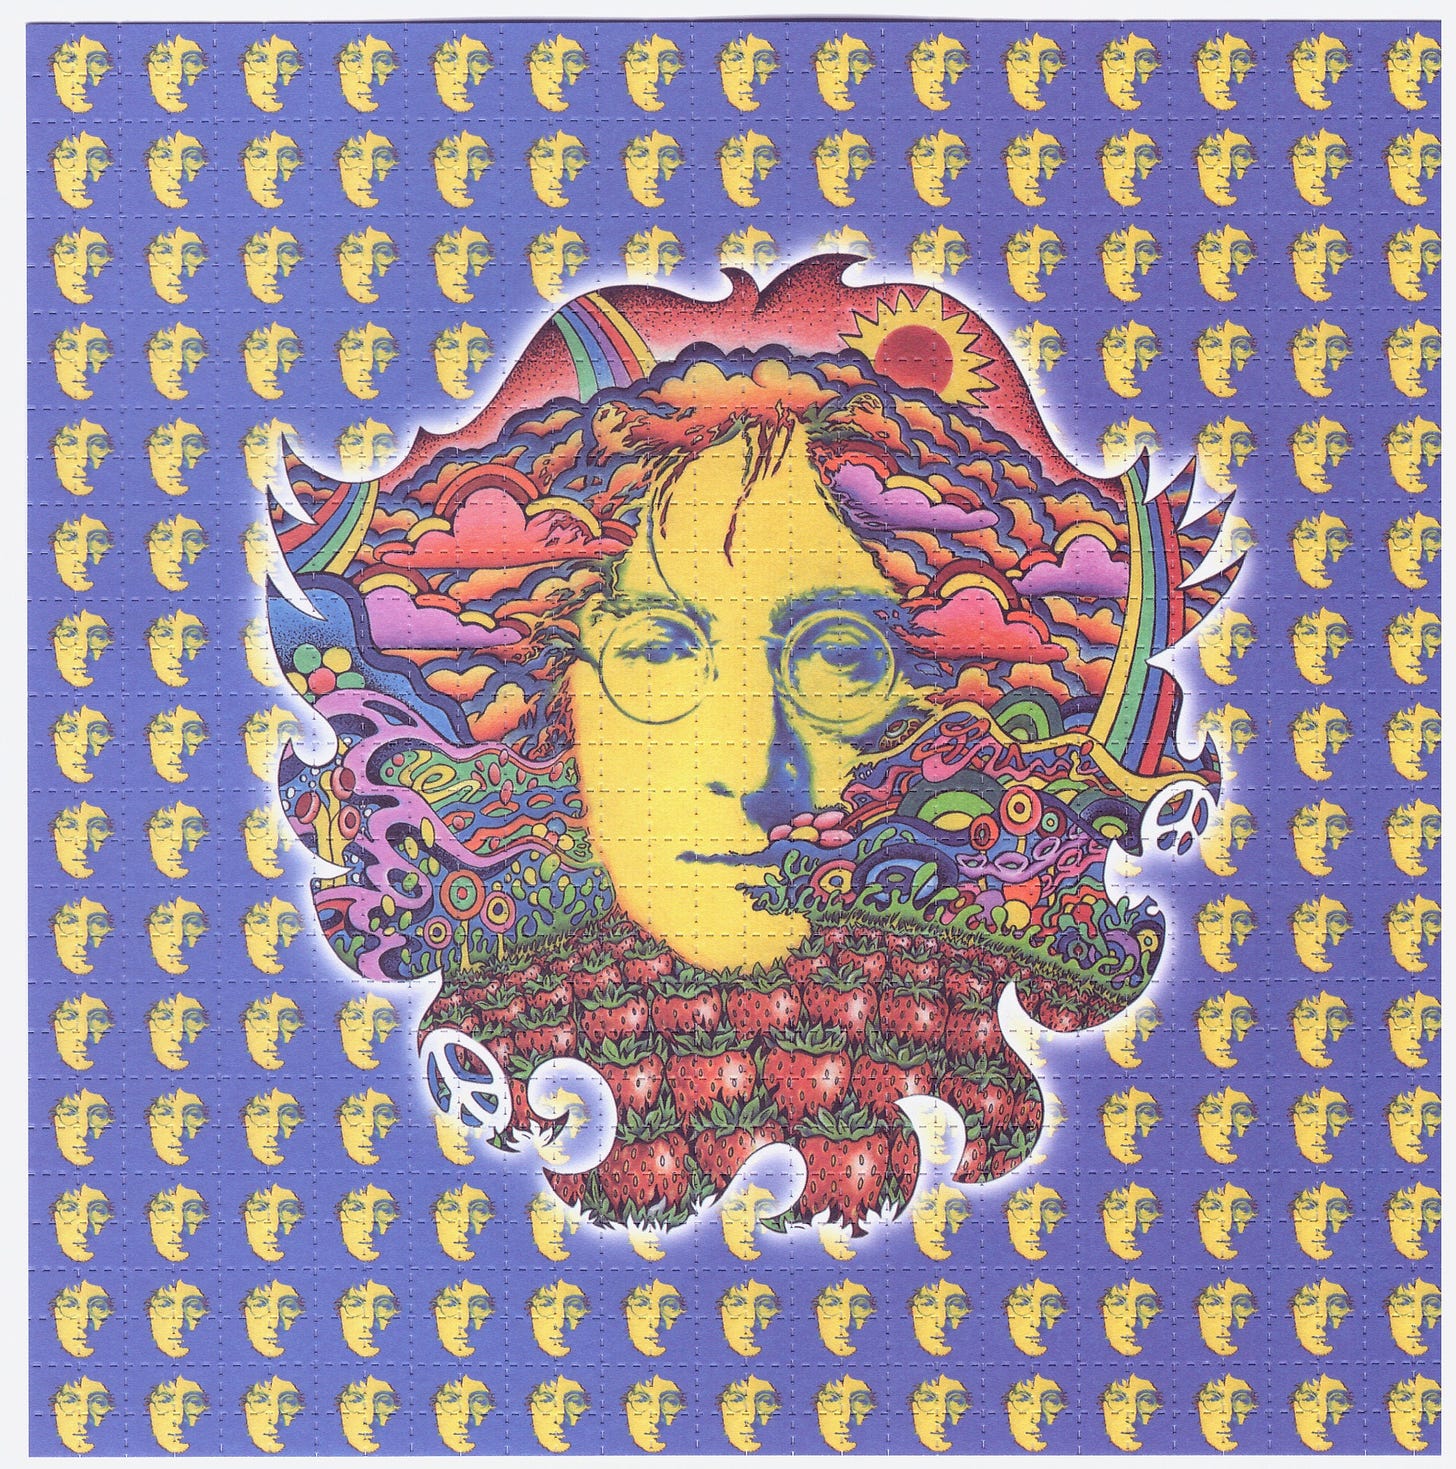 John Lennon Blotter Art by Jeff Hopp | Etsy